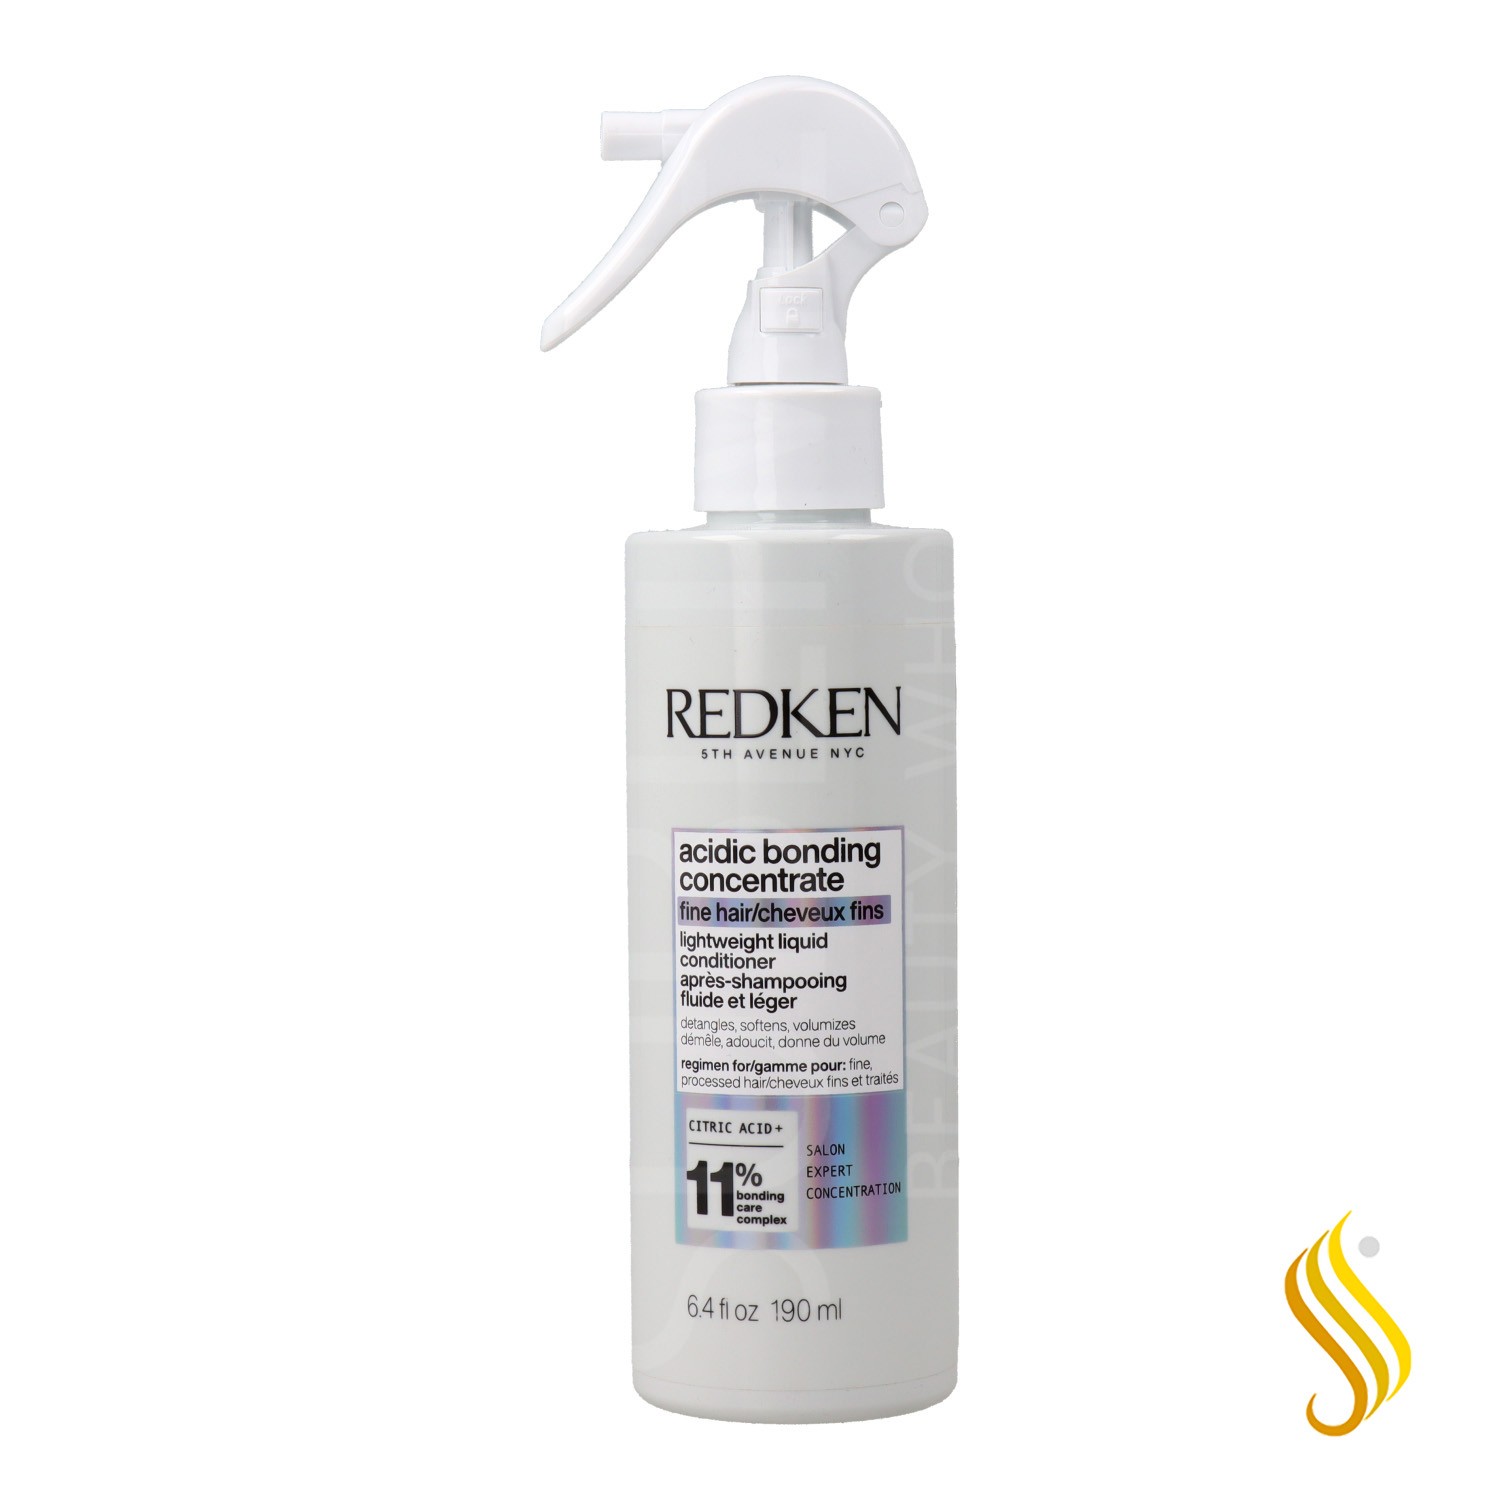 Redken Acidic Bonding Concentrate 11% Après-shampooing 190 ml